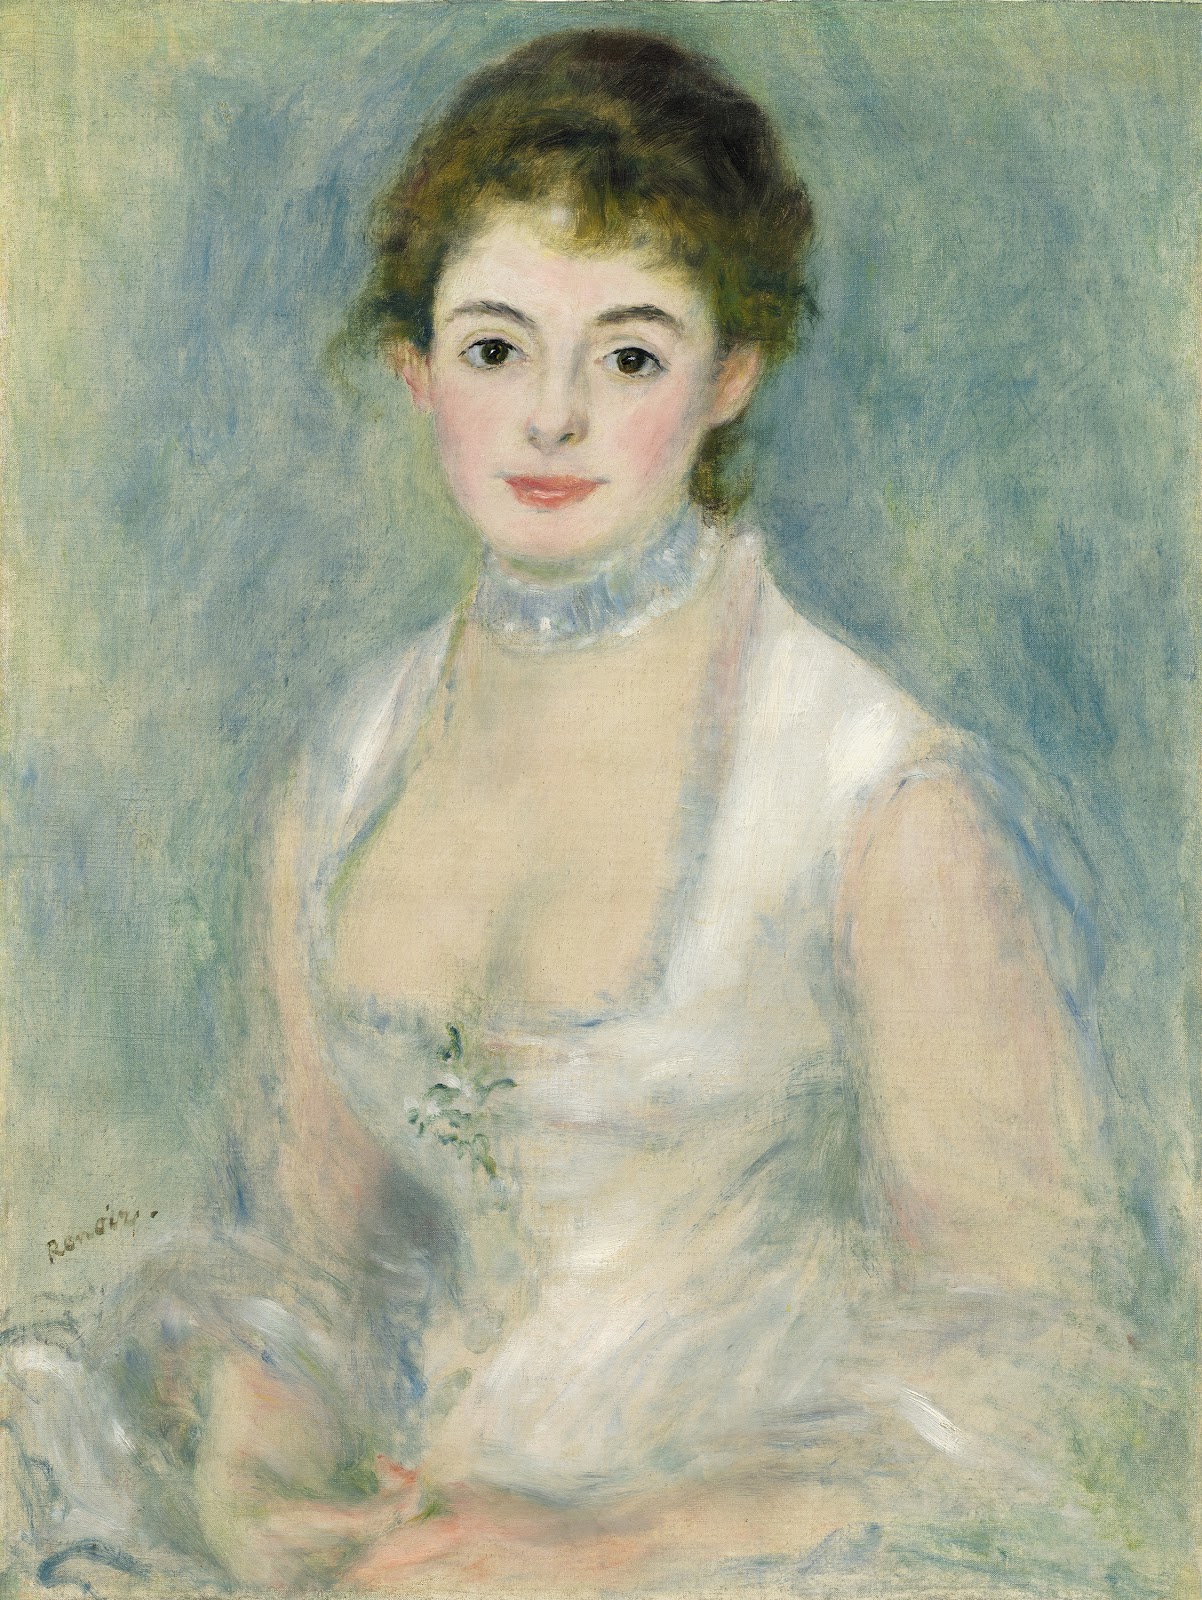 Pierre+Auguste+Renoir-1841-1-19 (832).jpg